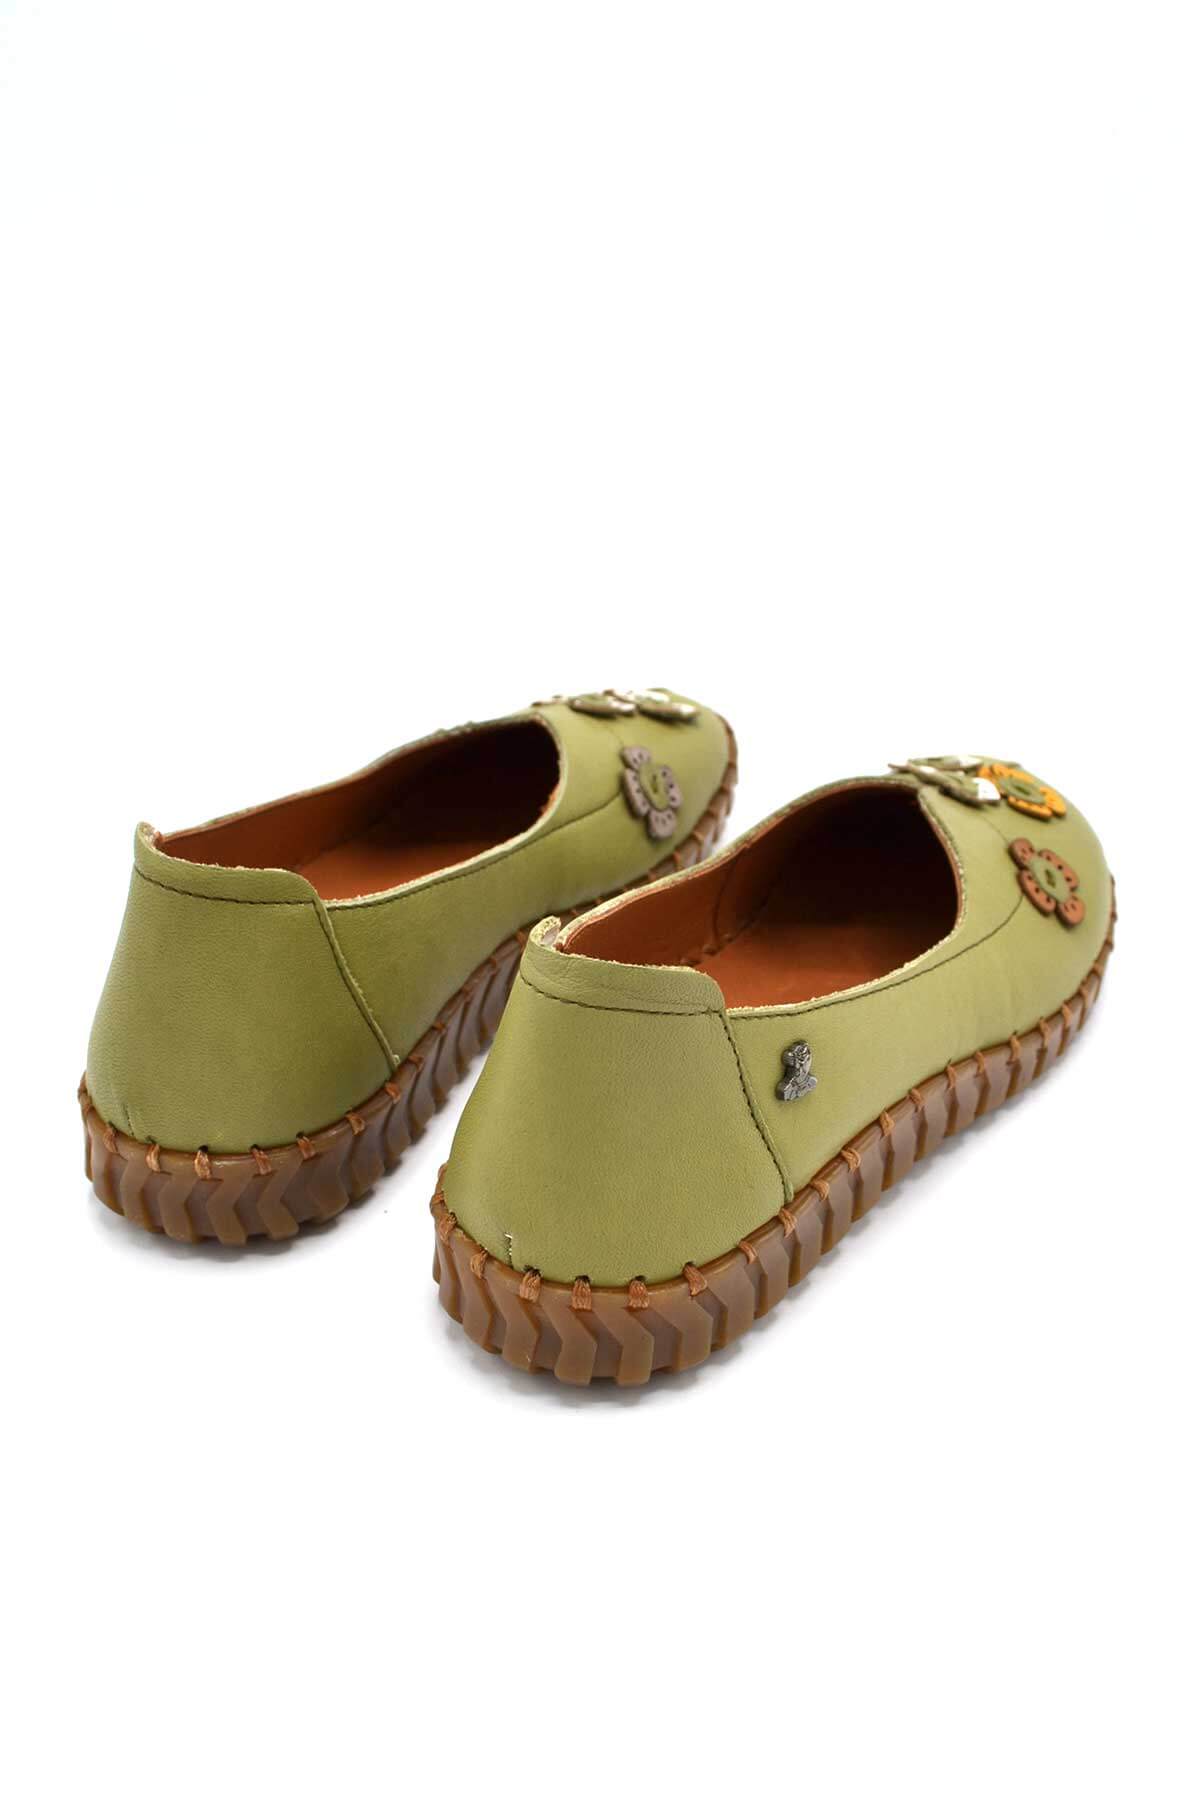 Kadın Comfort Deri Ayakkabı Yeşil 2010711Y